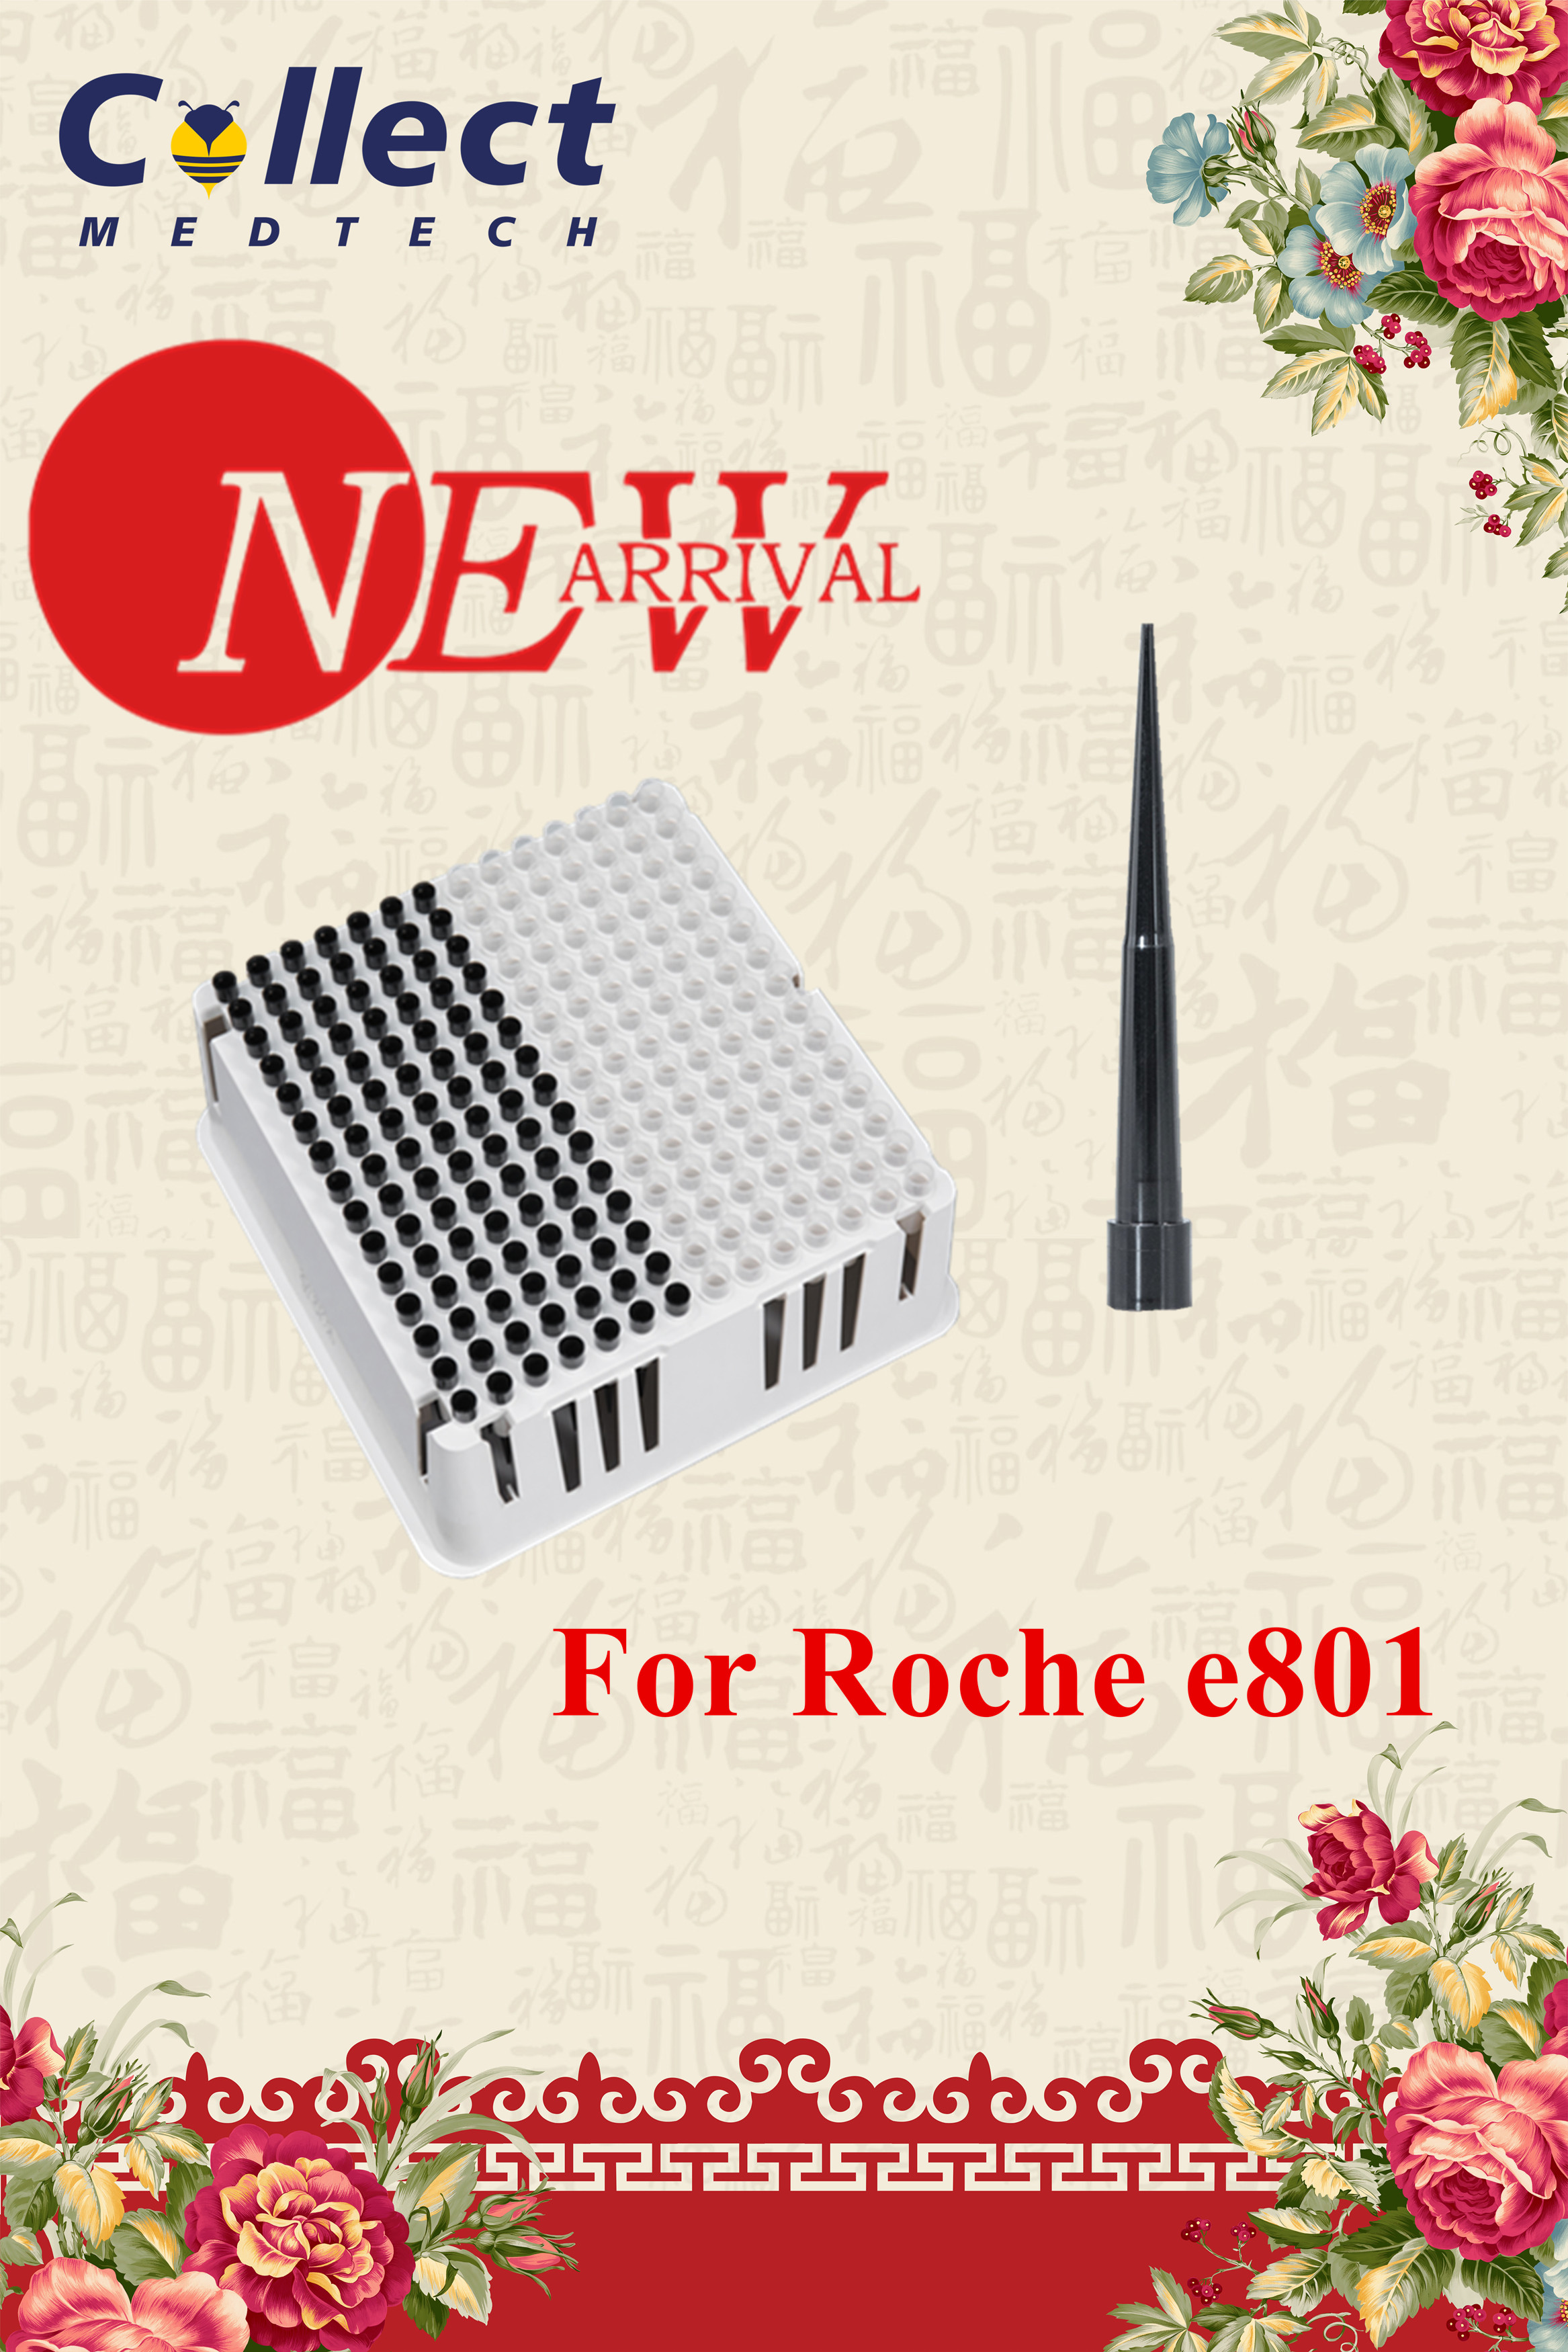 Жаңа келу – Roche e801 үшін кеңестер мен шыныаяқтар науасы